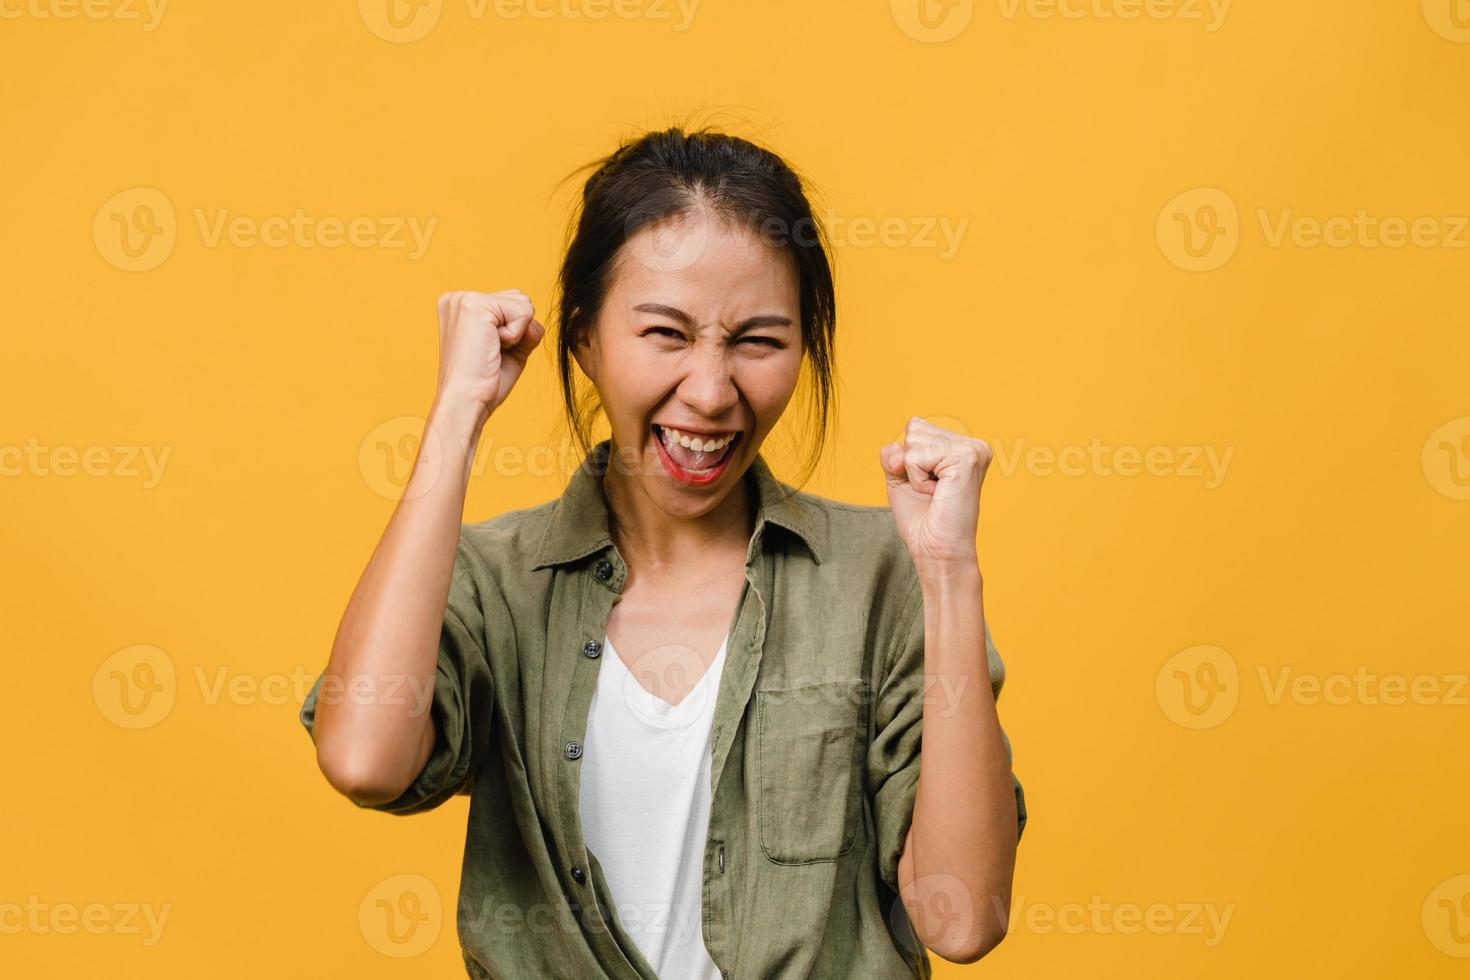 jovem asiática com expressão positiva, alegre e emocionante, vestida com um pano casual e olha para a câmera sobre fundo amarelo. feliz adorável feliz mulher alegra sucesso. conceito de expressão facial. foto